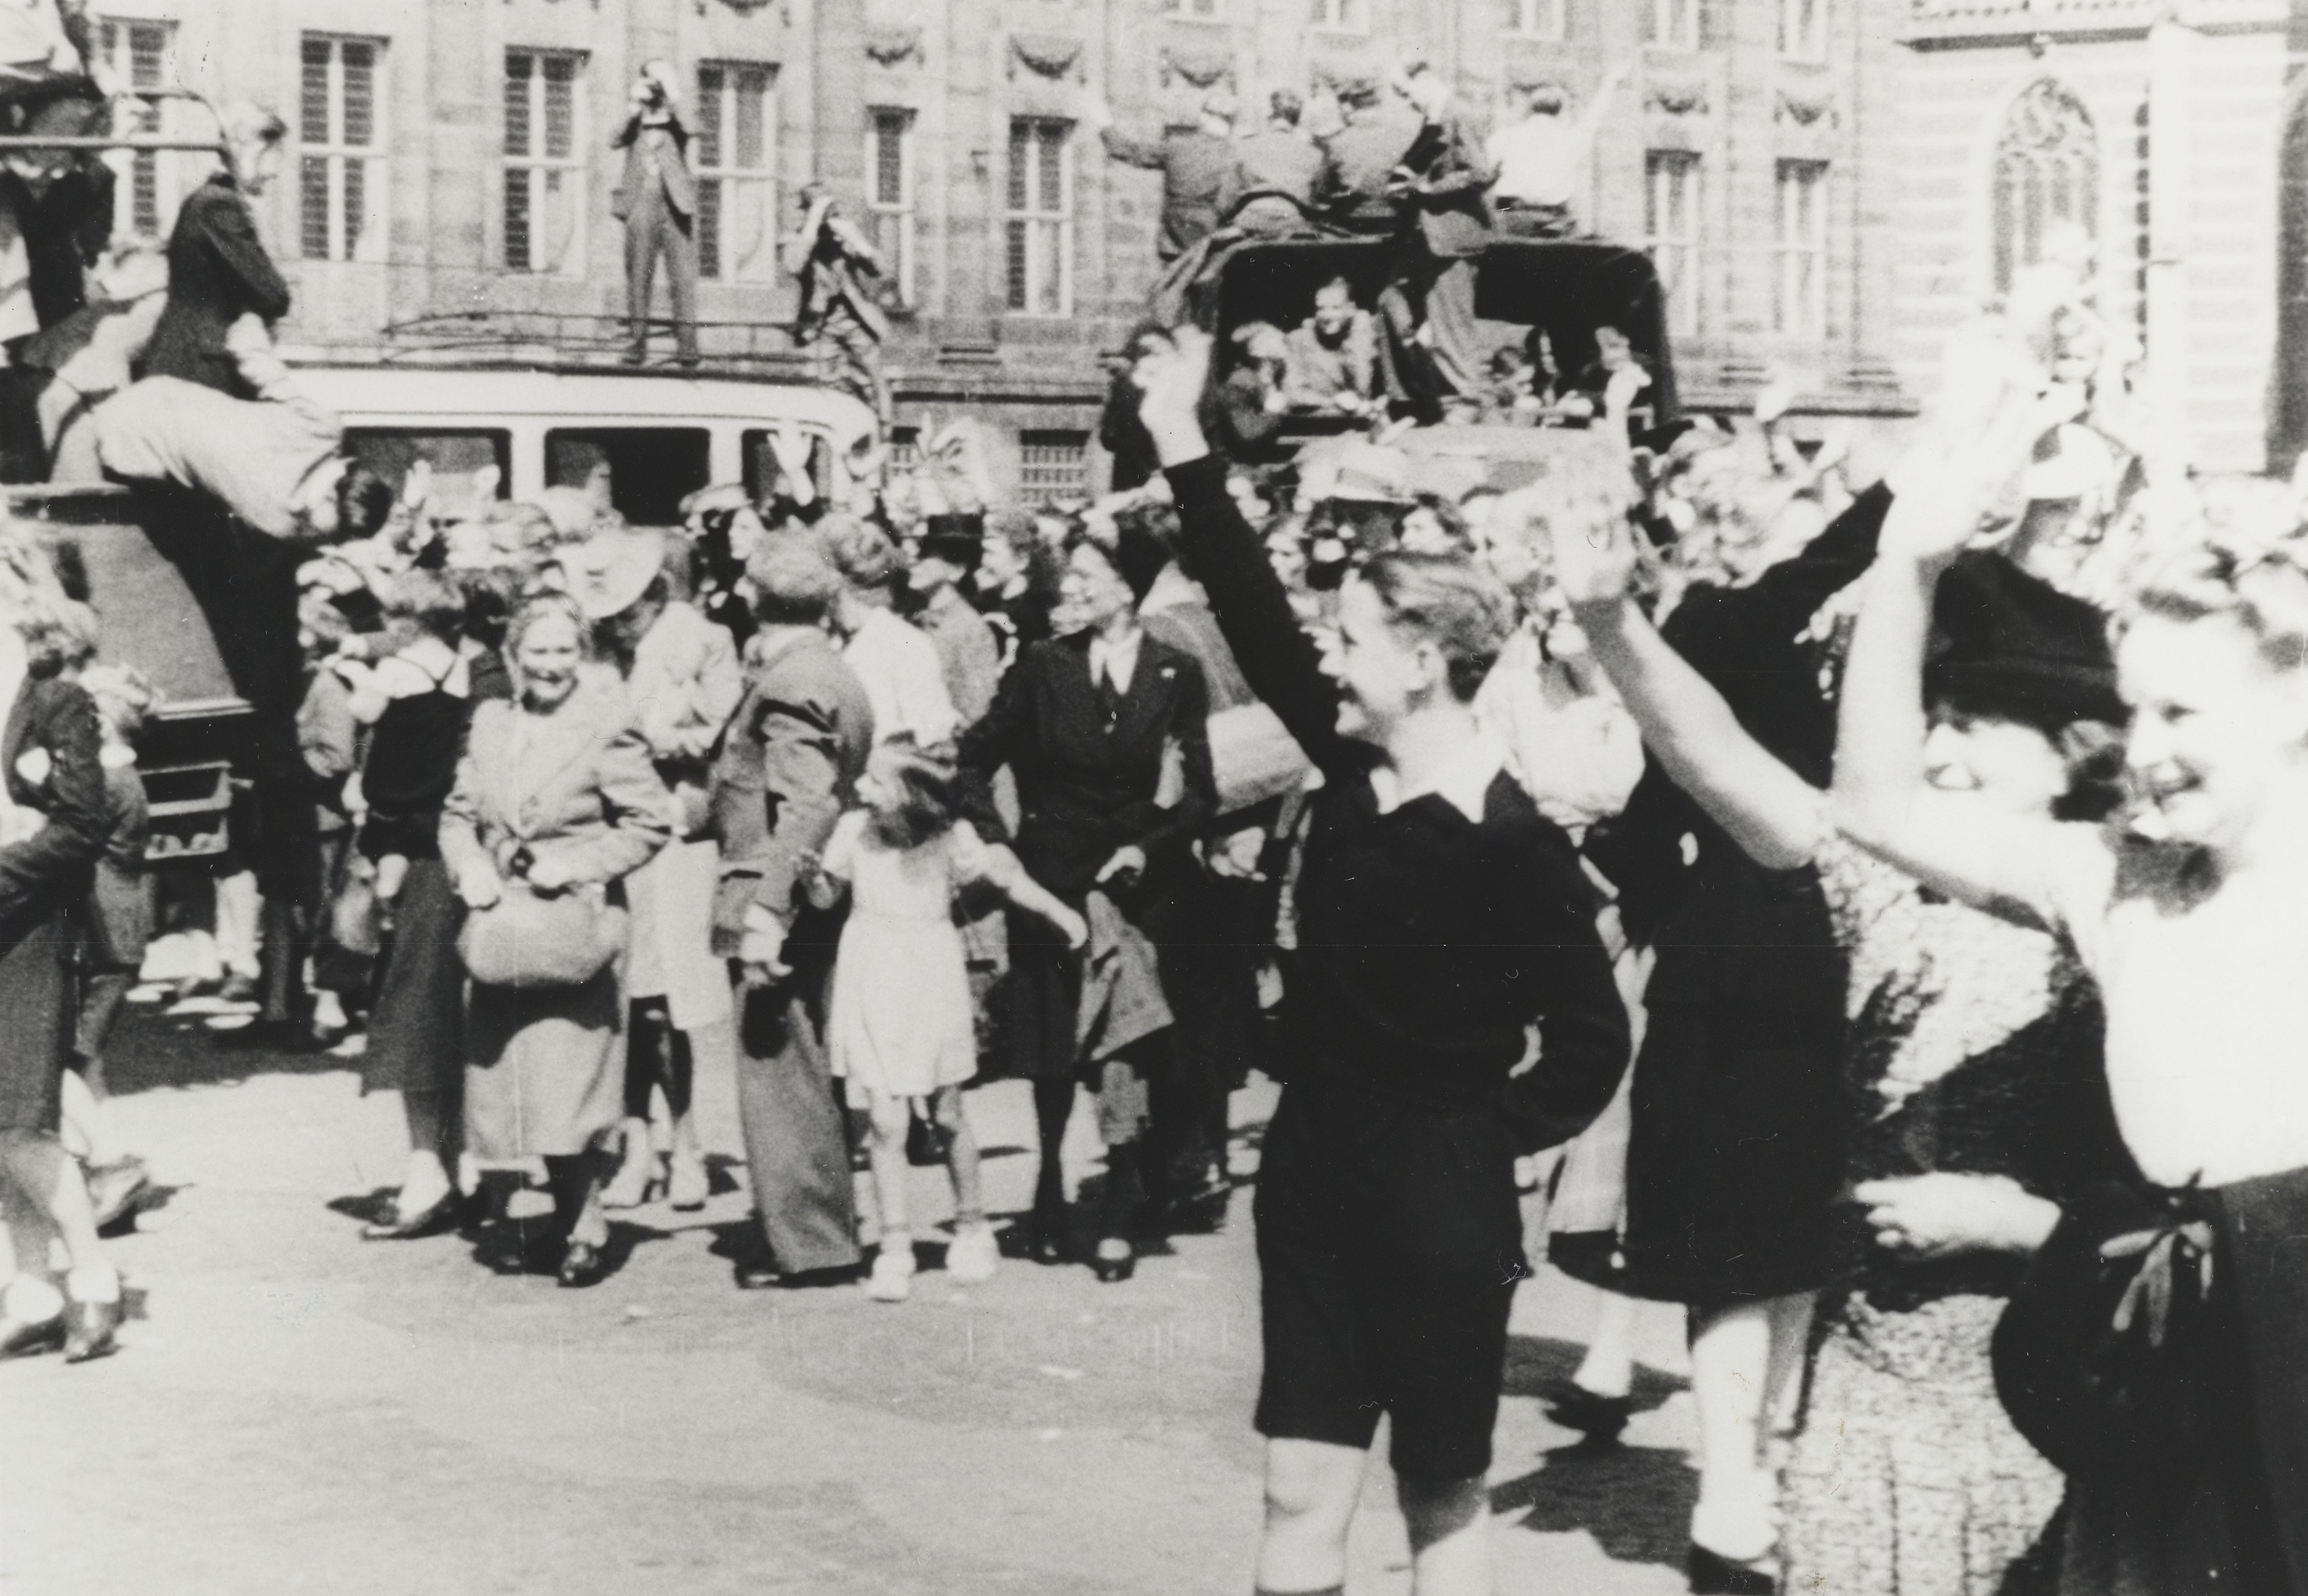 Oorlogsvrijwilligers nemen afscheid op de Dam te Amsterdam voor hun vertrek naar voormalig Nederlands-Indië. De militairen in de vrachtwagens zijn nog in burgerkleding.